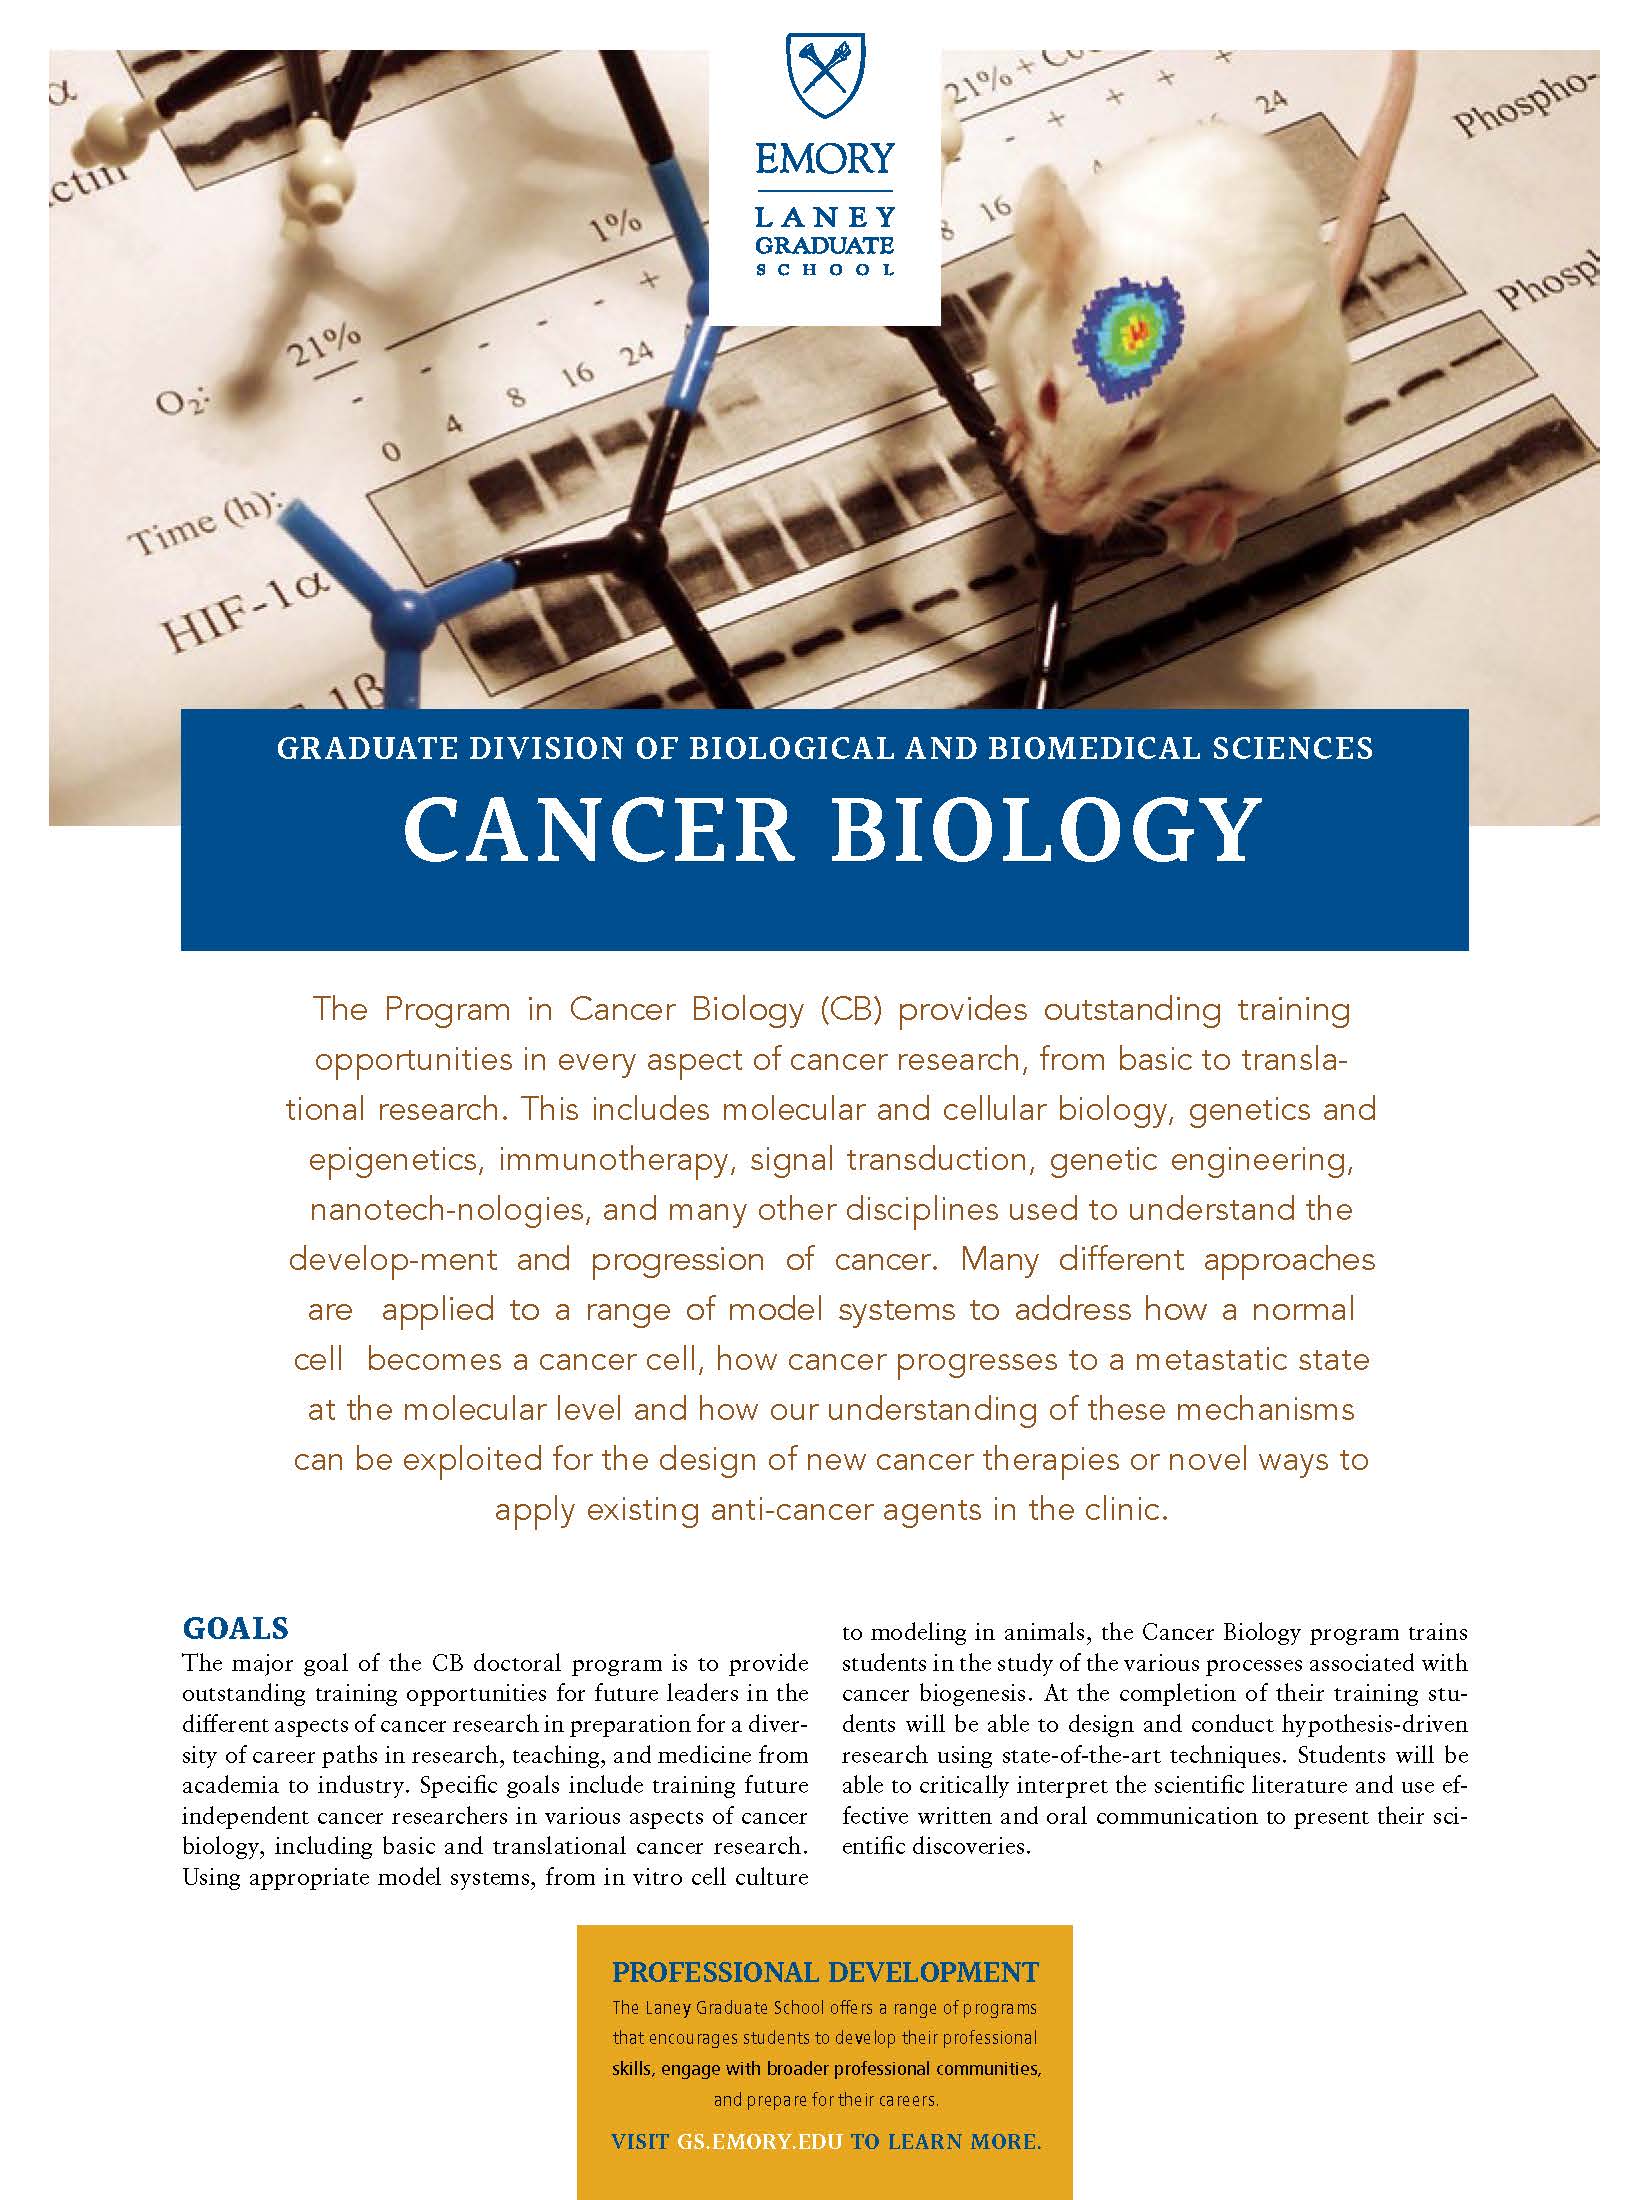 Cancer Biology Brochure